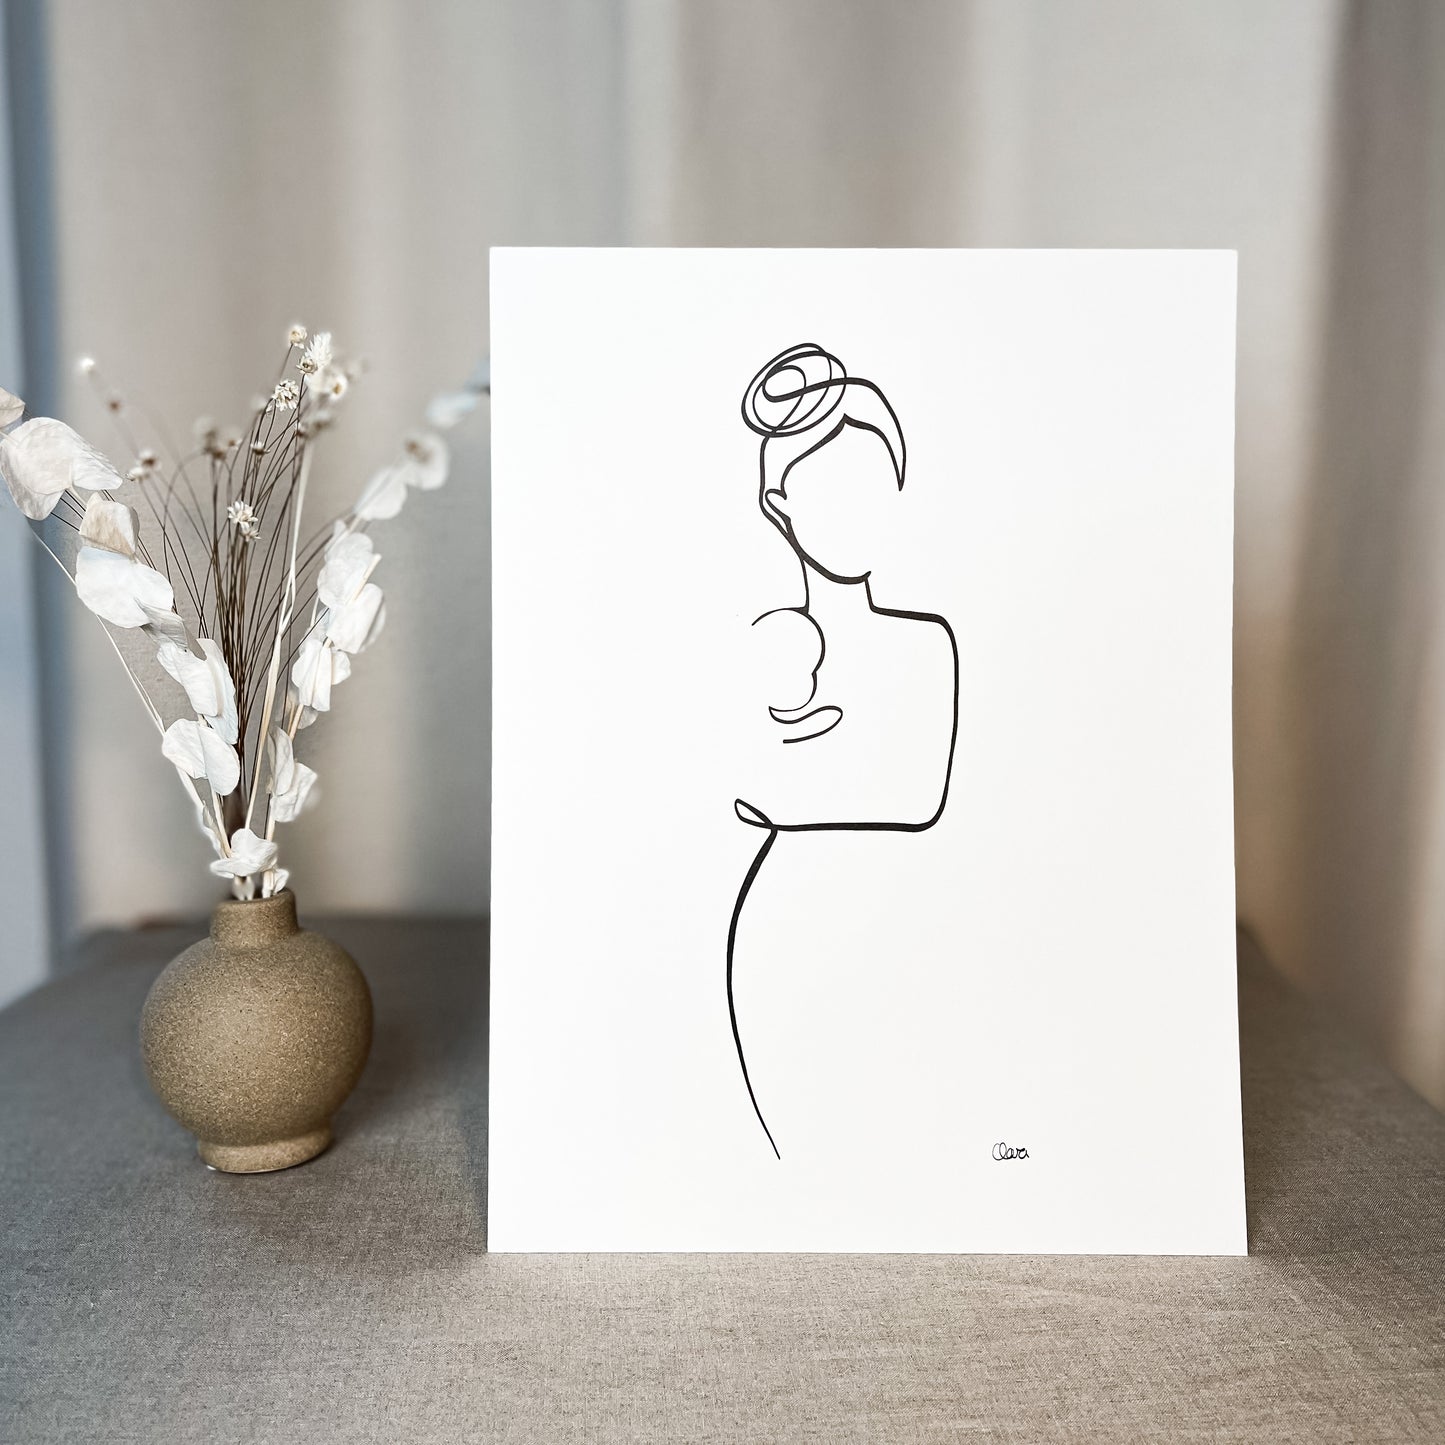 Mutter und Kind Nr. 5-Leinwand-JUDITH CLARA-30x40 cm (zartweiß) Papier 300g-one-line-art